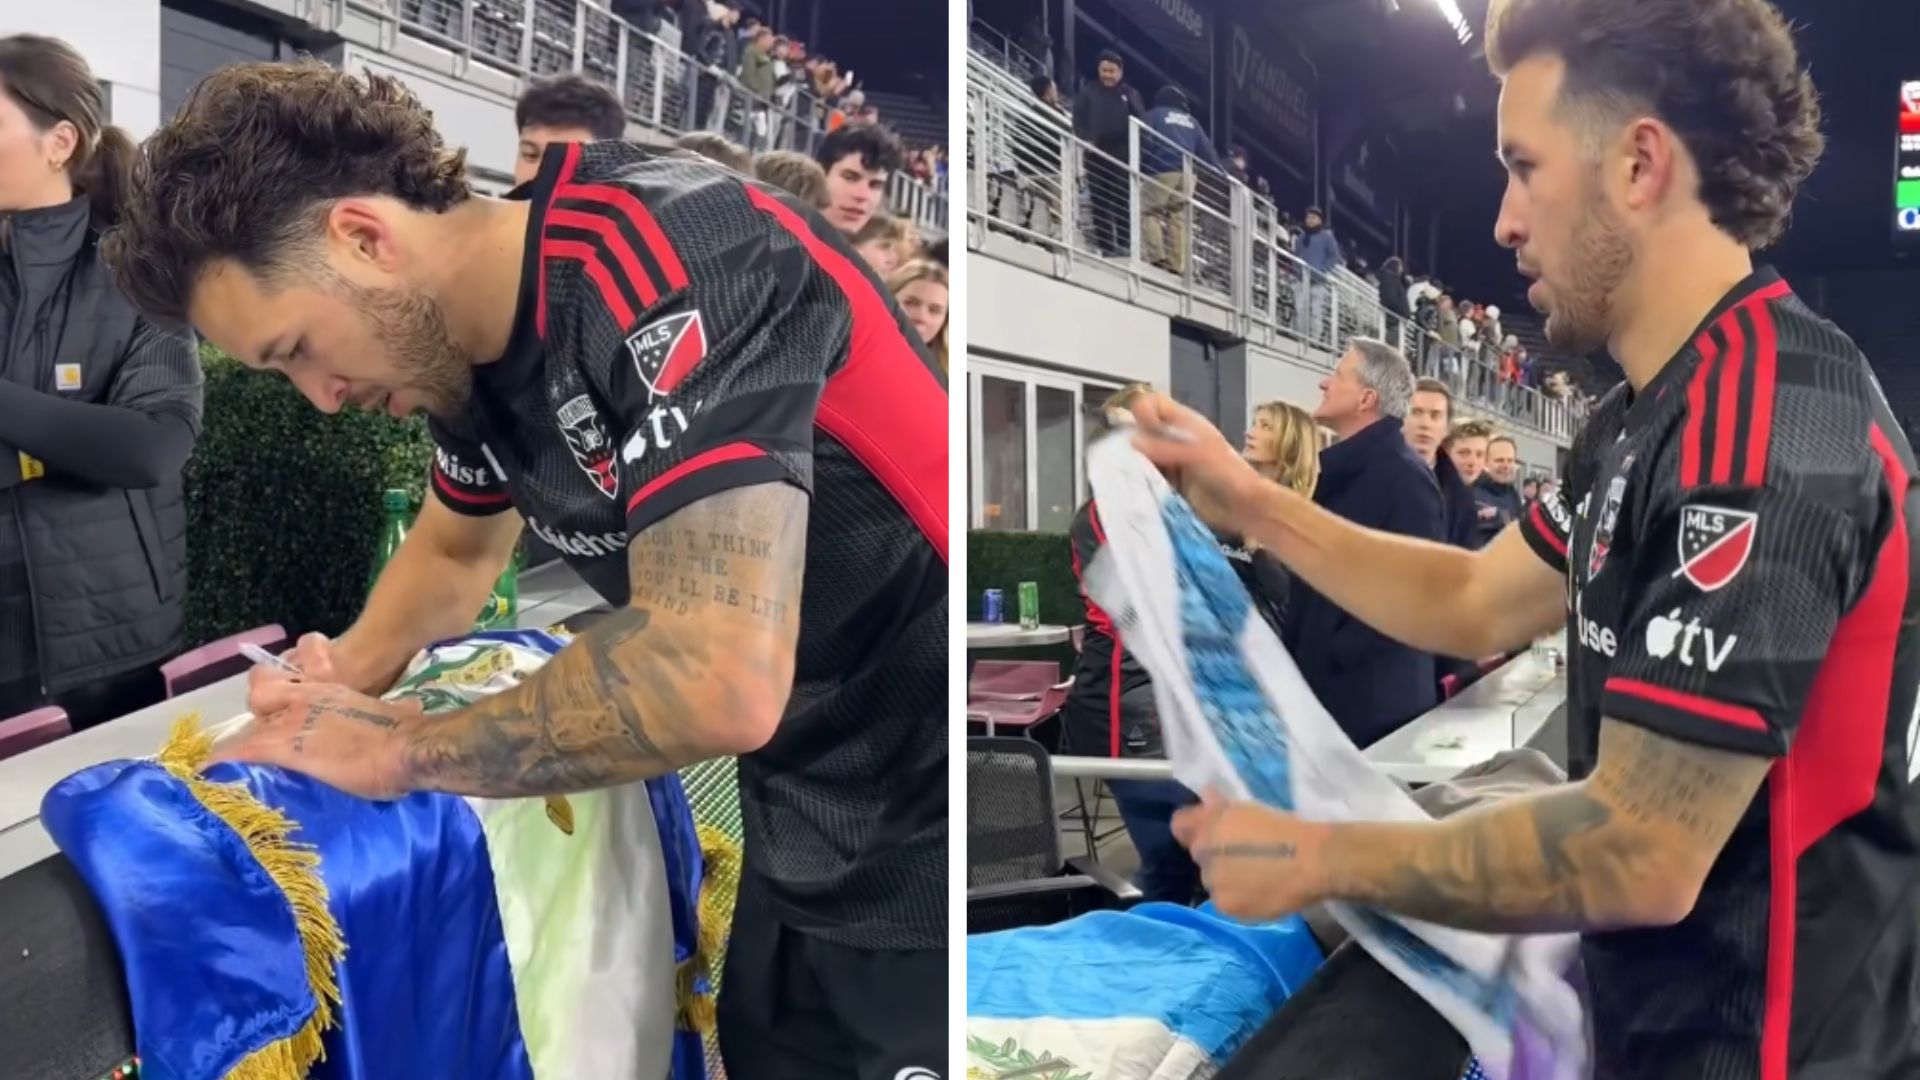 El defensa del DC United, Aaron Herrera, firmando autógrafos para aficionados guatemaltecos en el Audi Field de Washignton. (Foto Prensa Libre: DCUnited/Facebook)